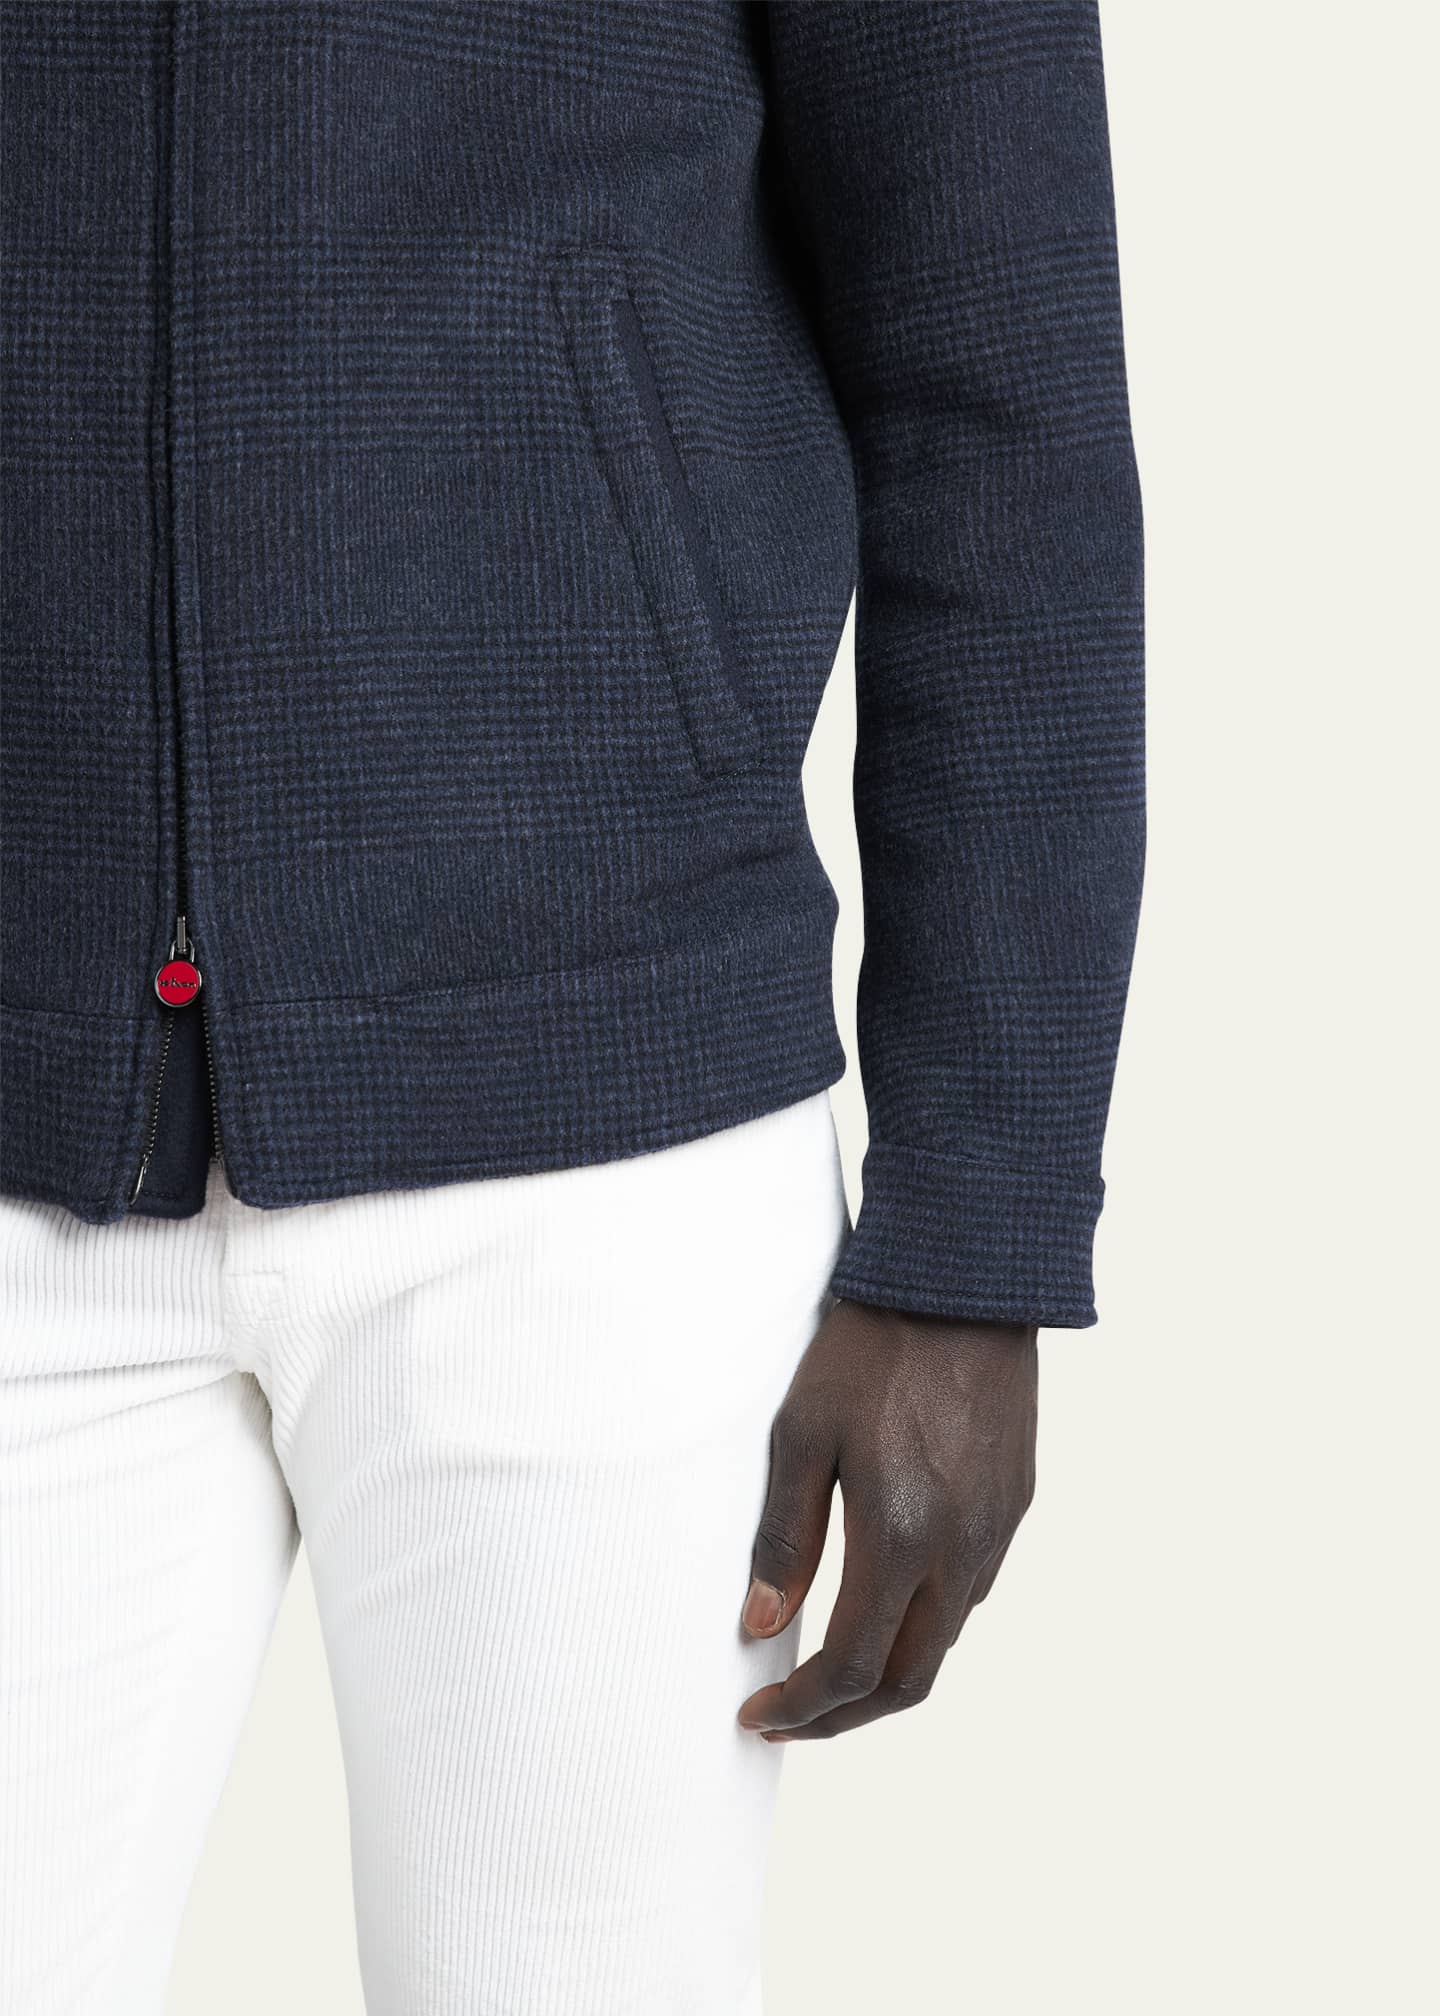 Kiton Men's Wool-Cashmere Shirt Jacket - Bergdorf Goodman